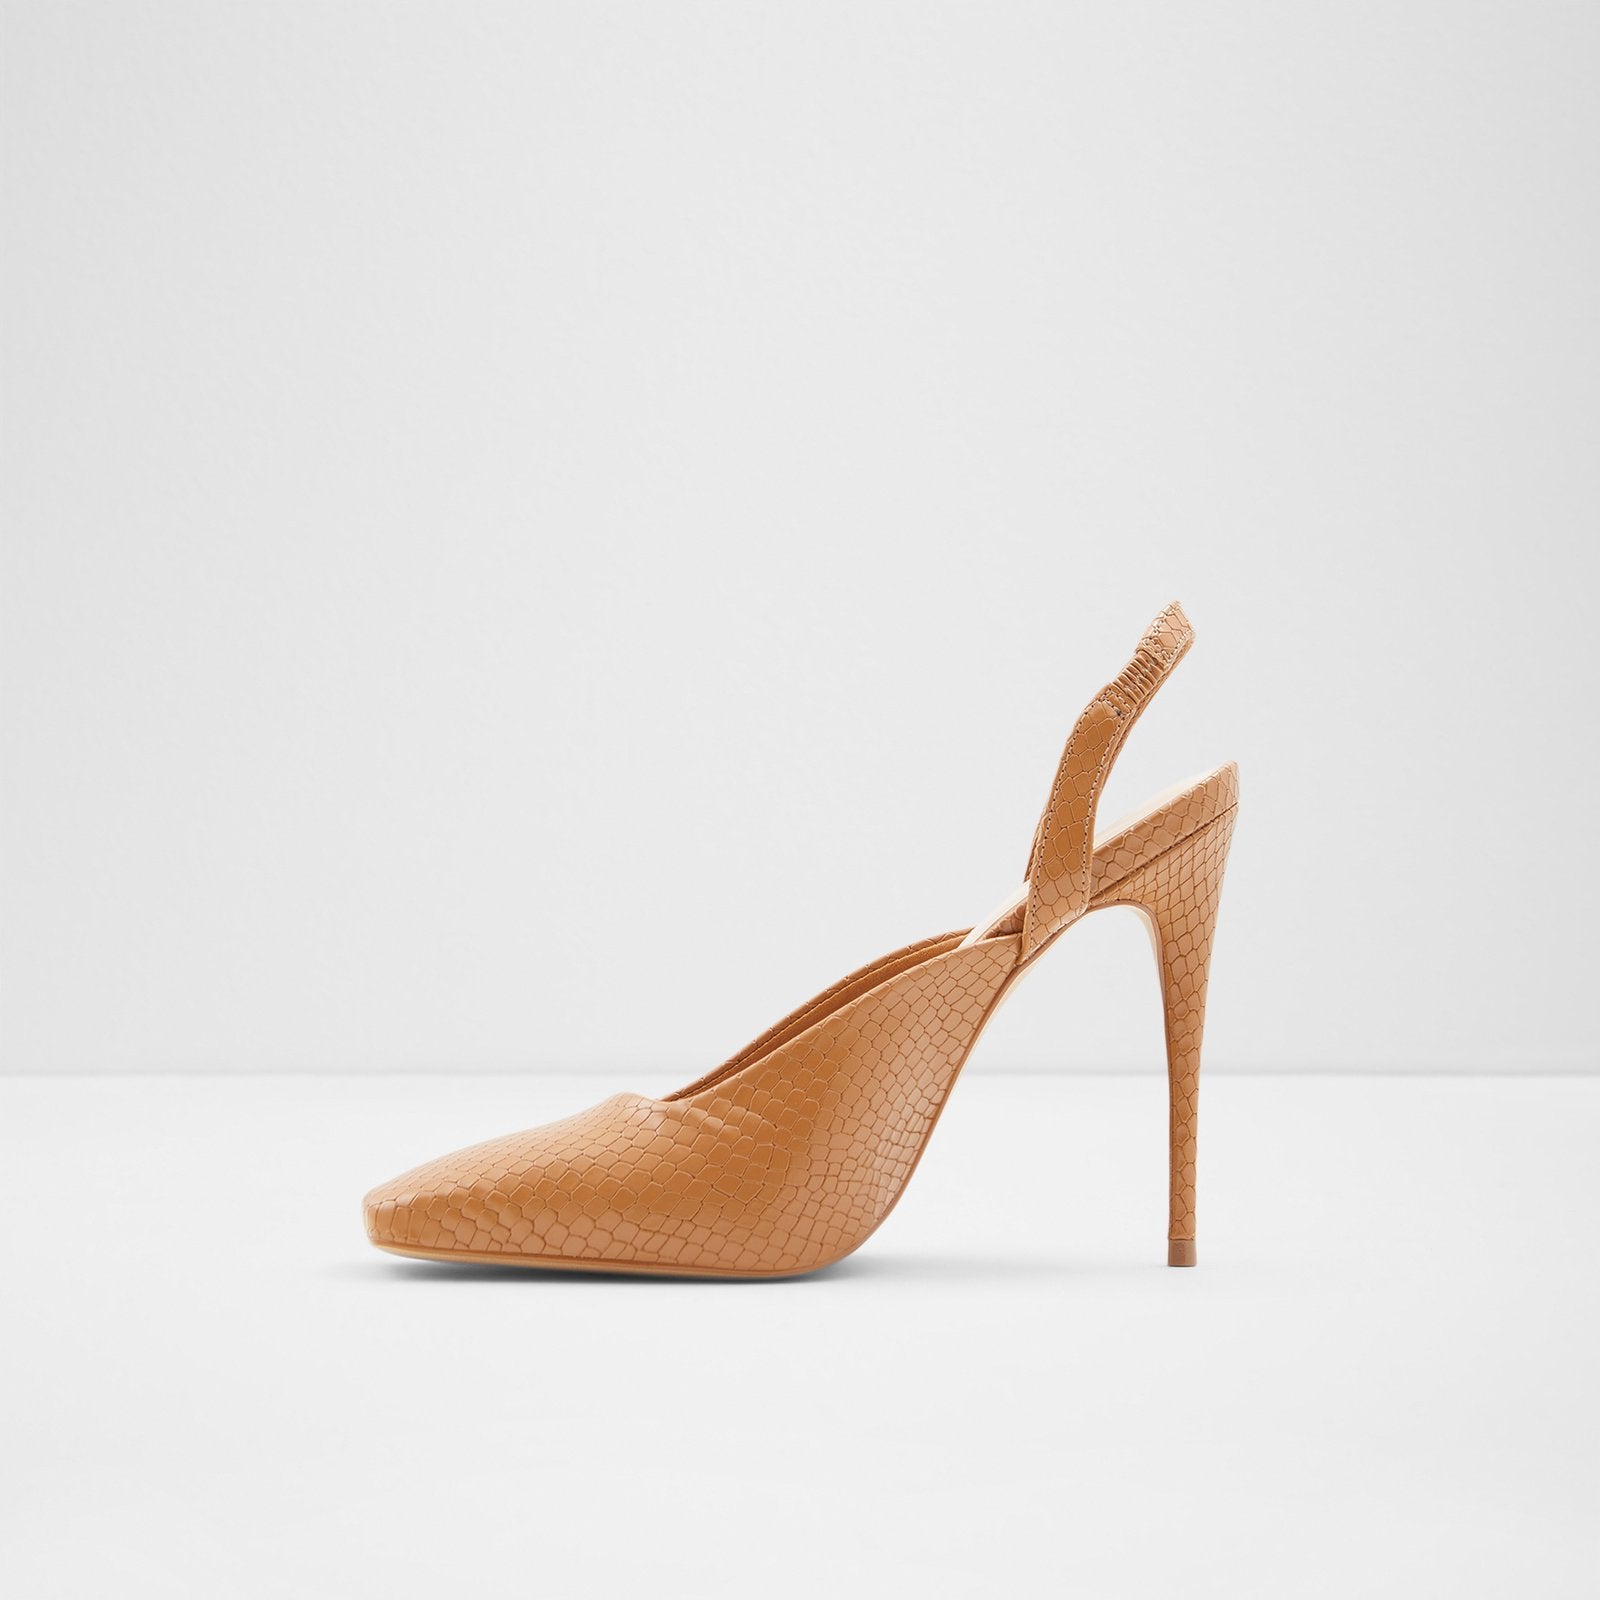 Rhiraniel Women Shoes - Light Beige - ALDO KSA